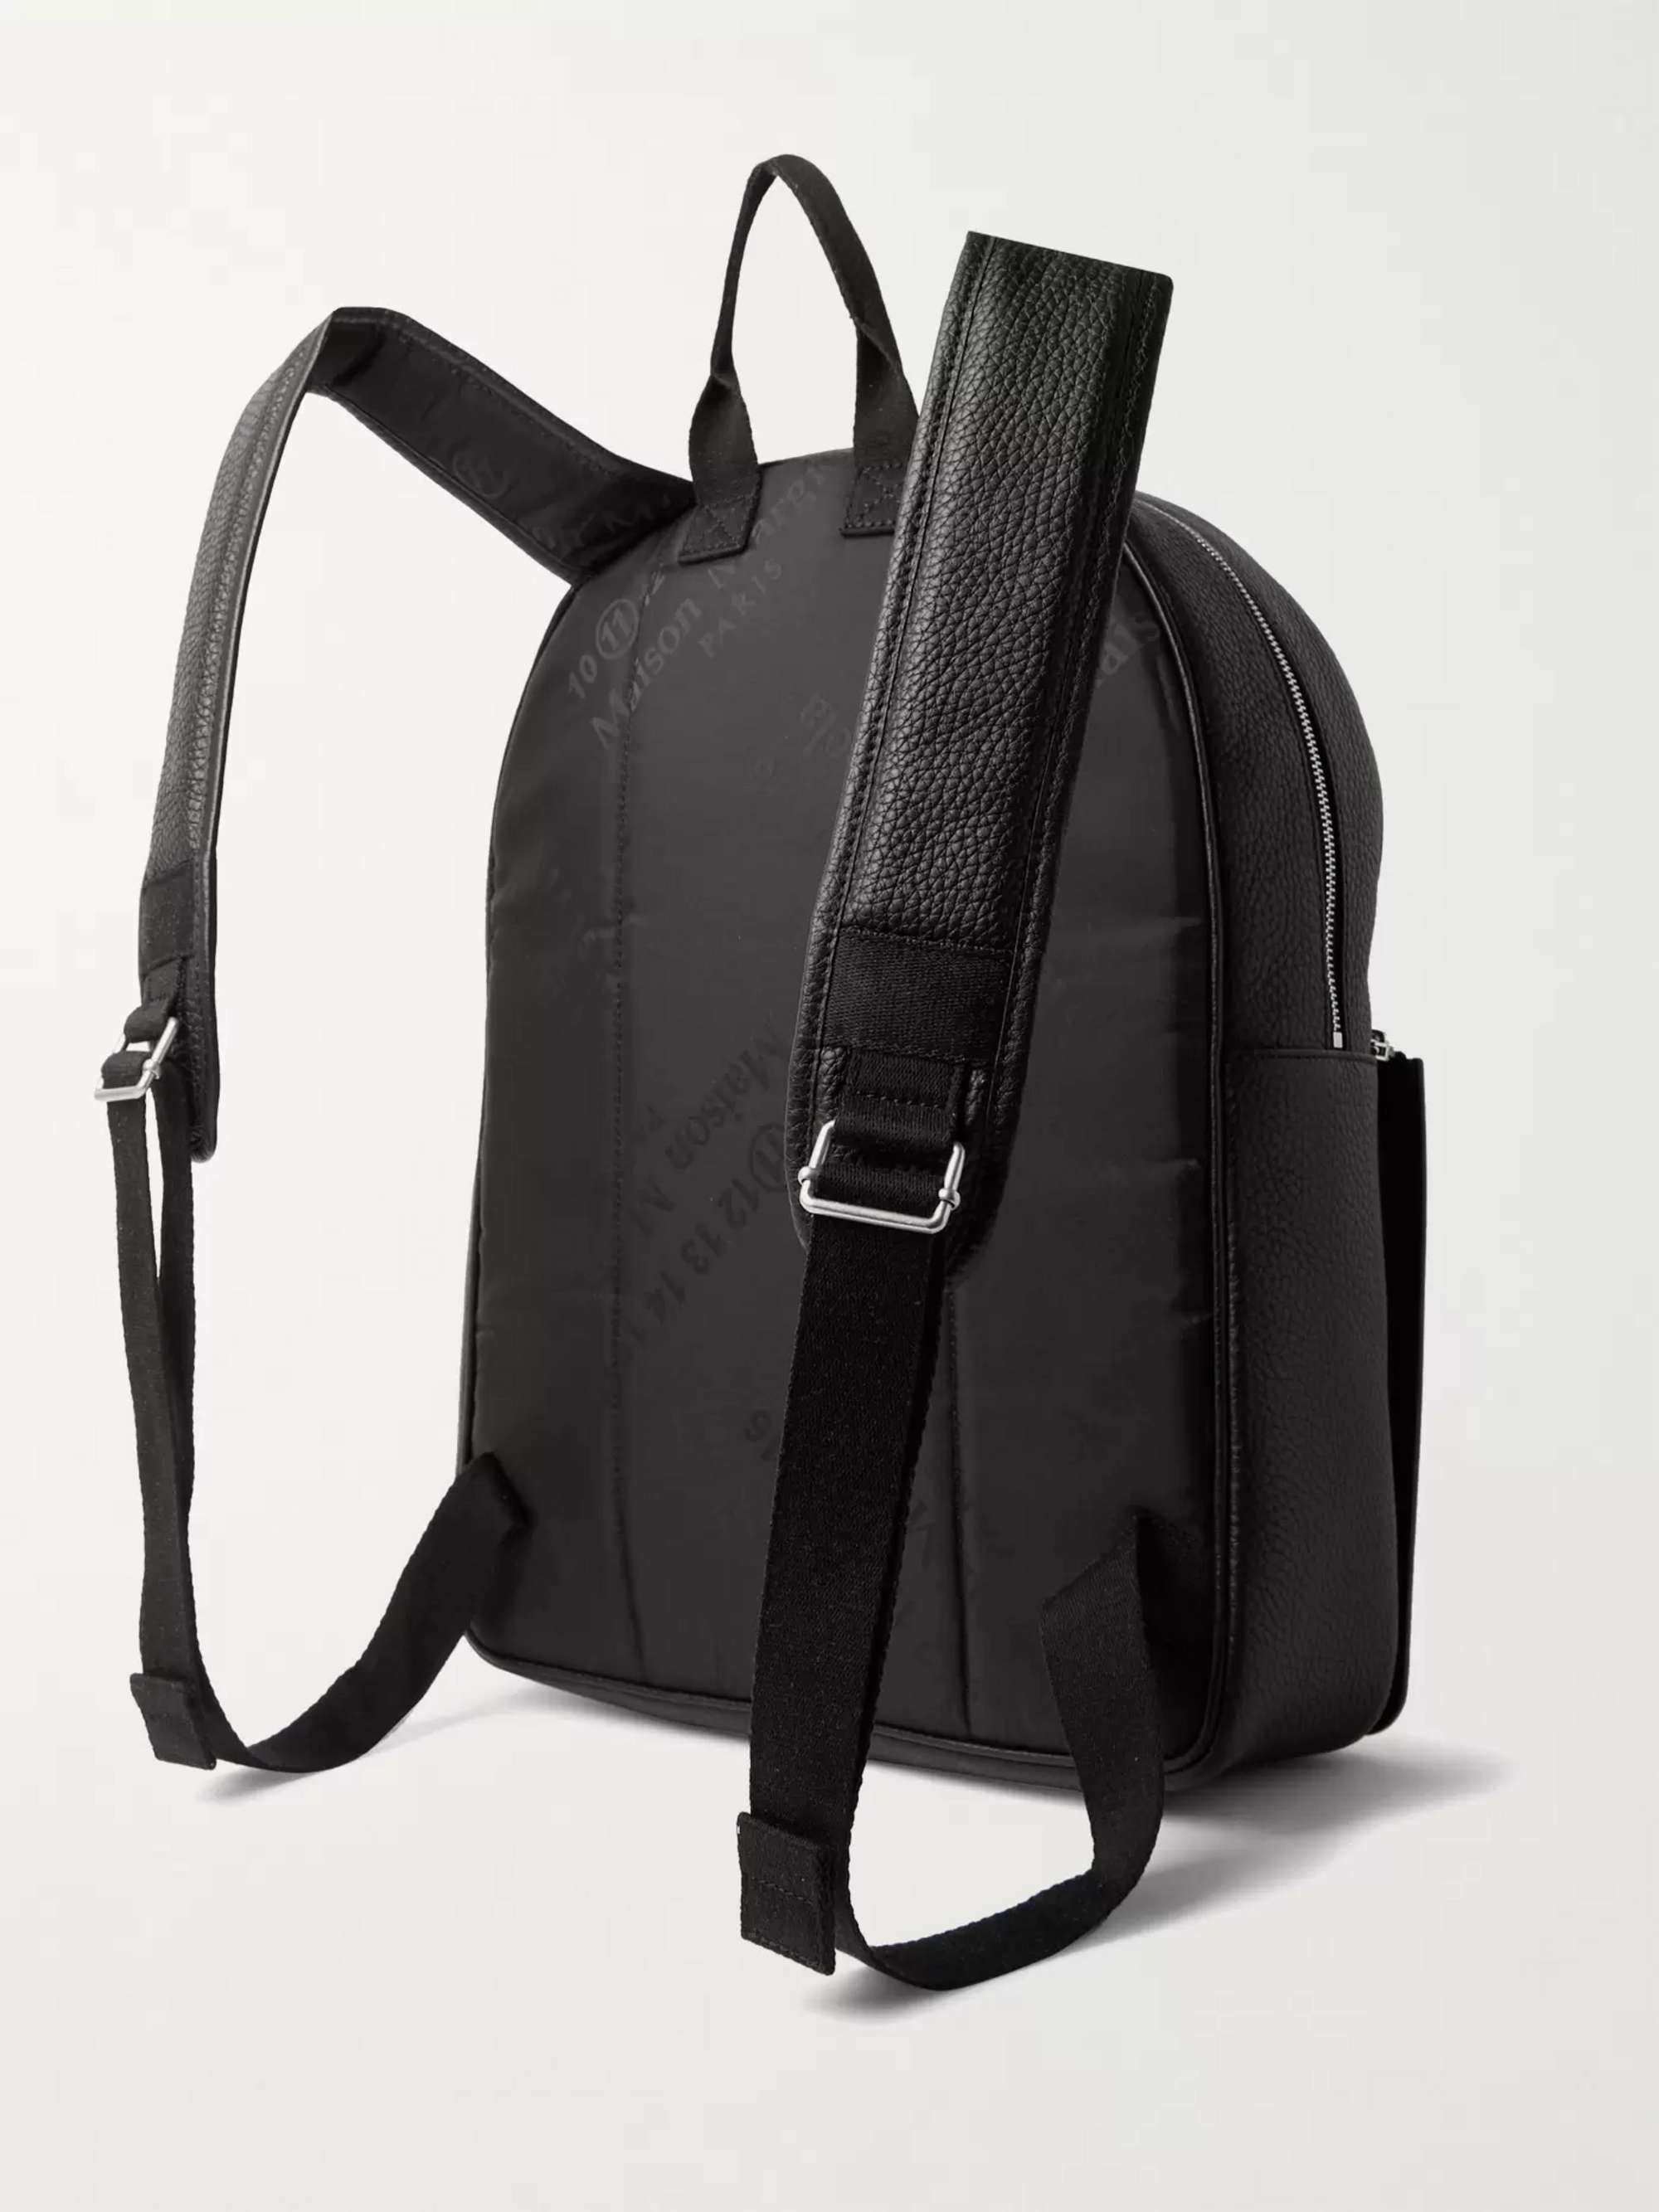 MAISON MARGIELA Full-Grain and Smooth Leather Backpack for Men | MR PORTER